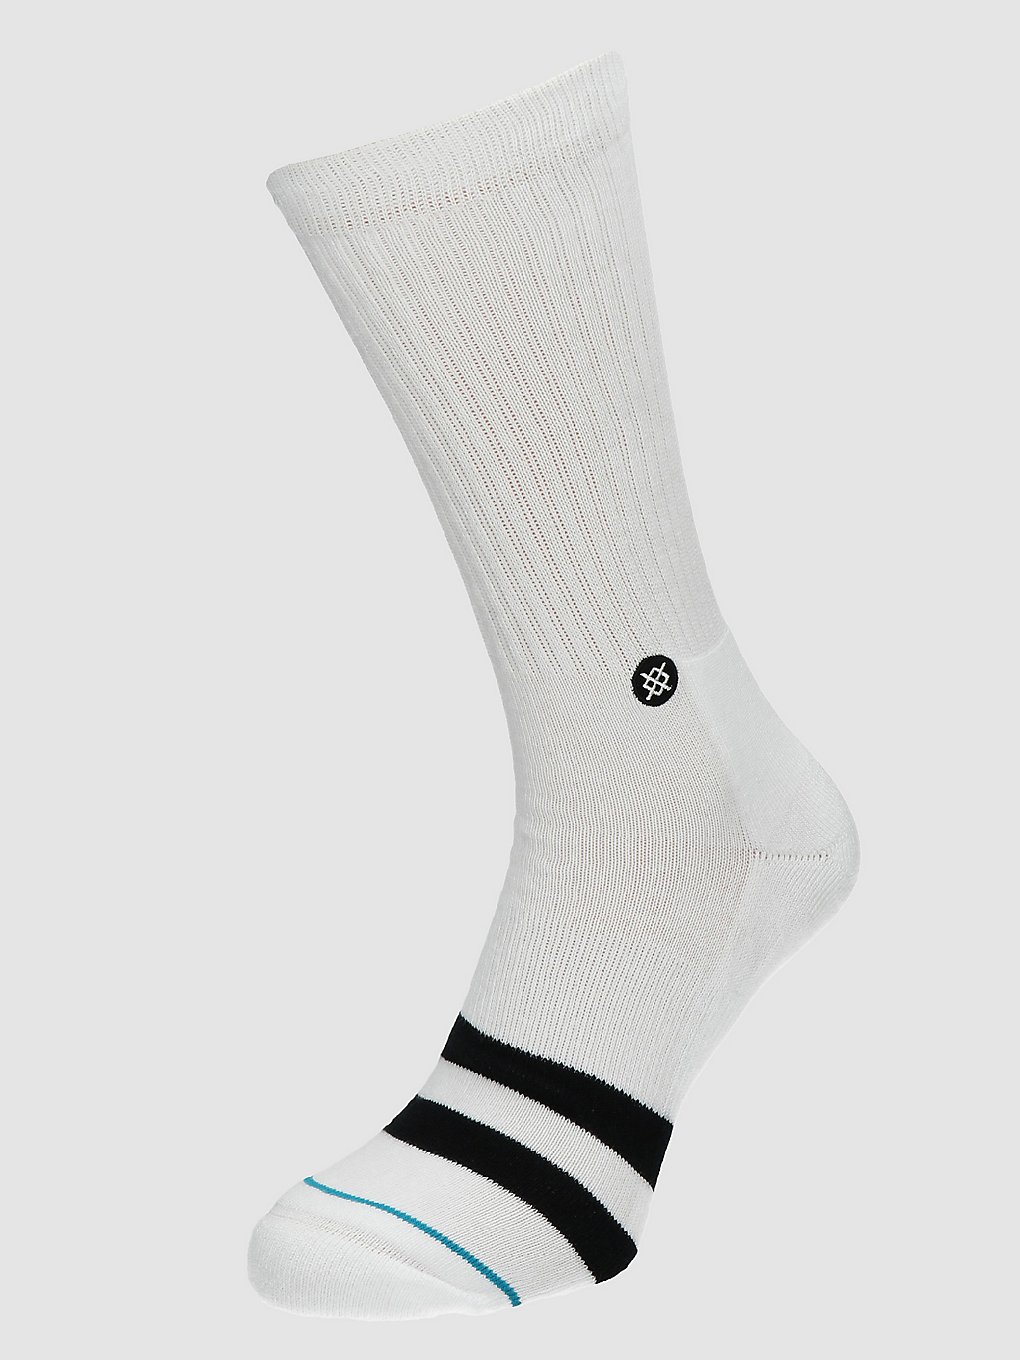 Image of Stance OG Socks bianco